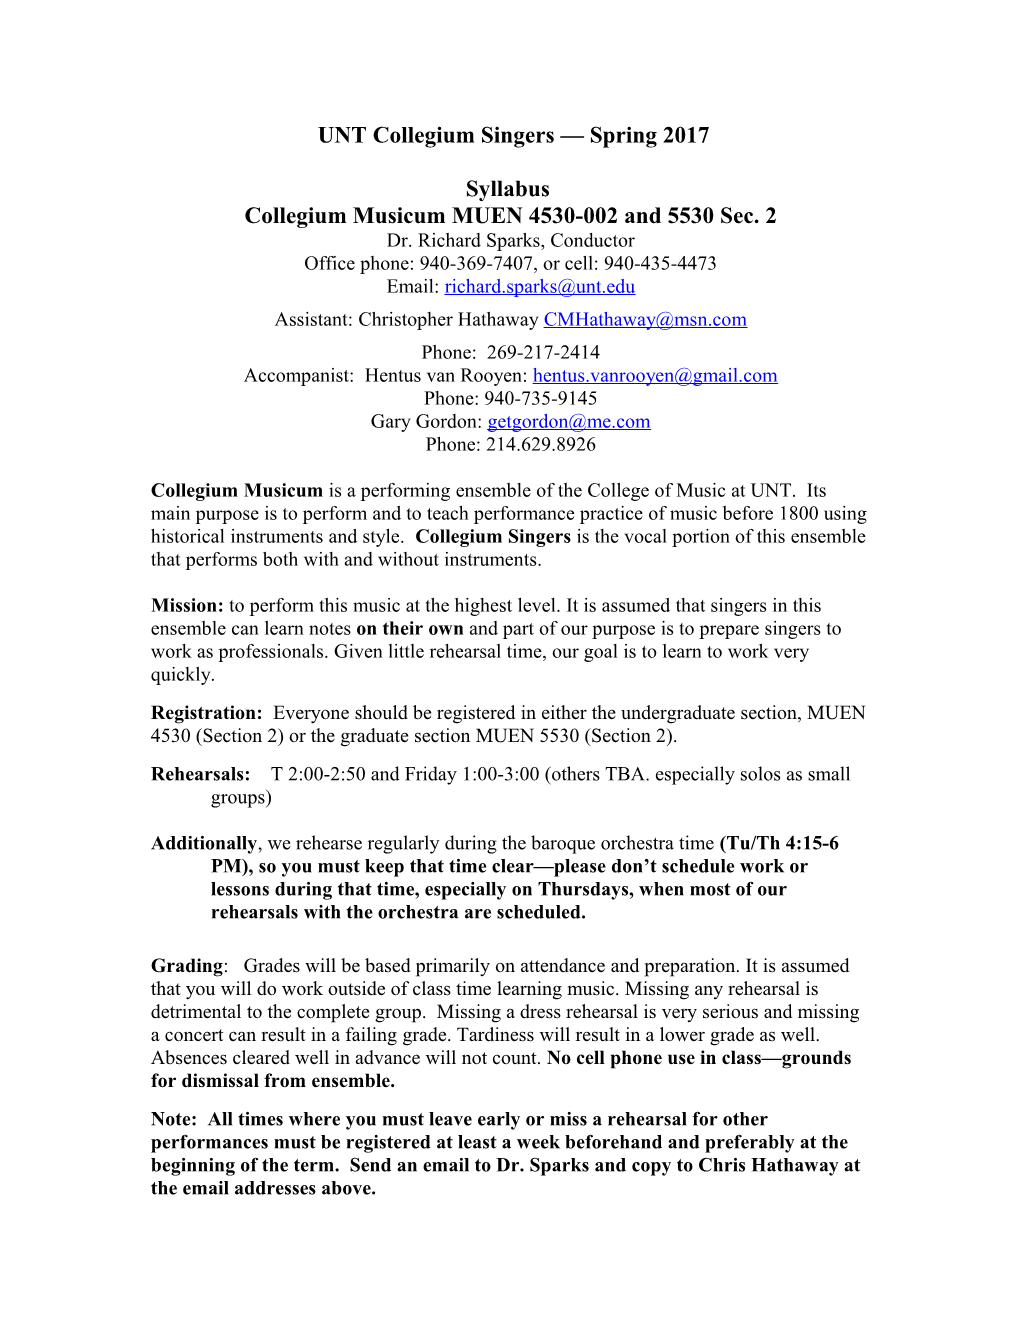 Syllabus - Collegium Musicum MUEN 4540 and 5540